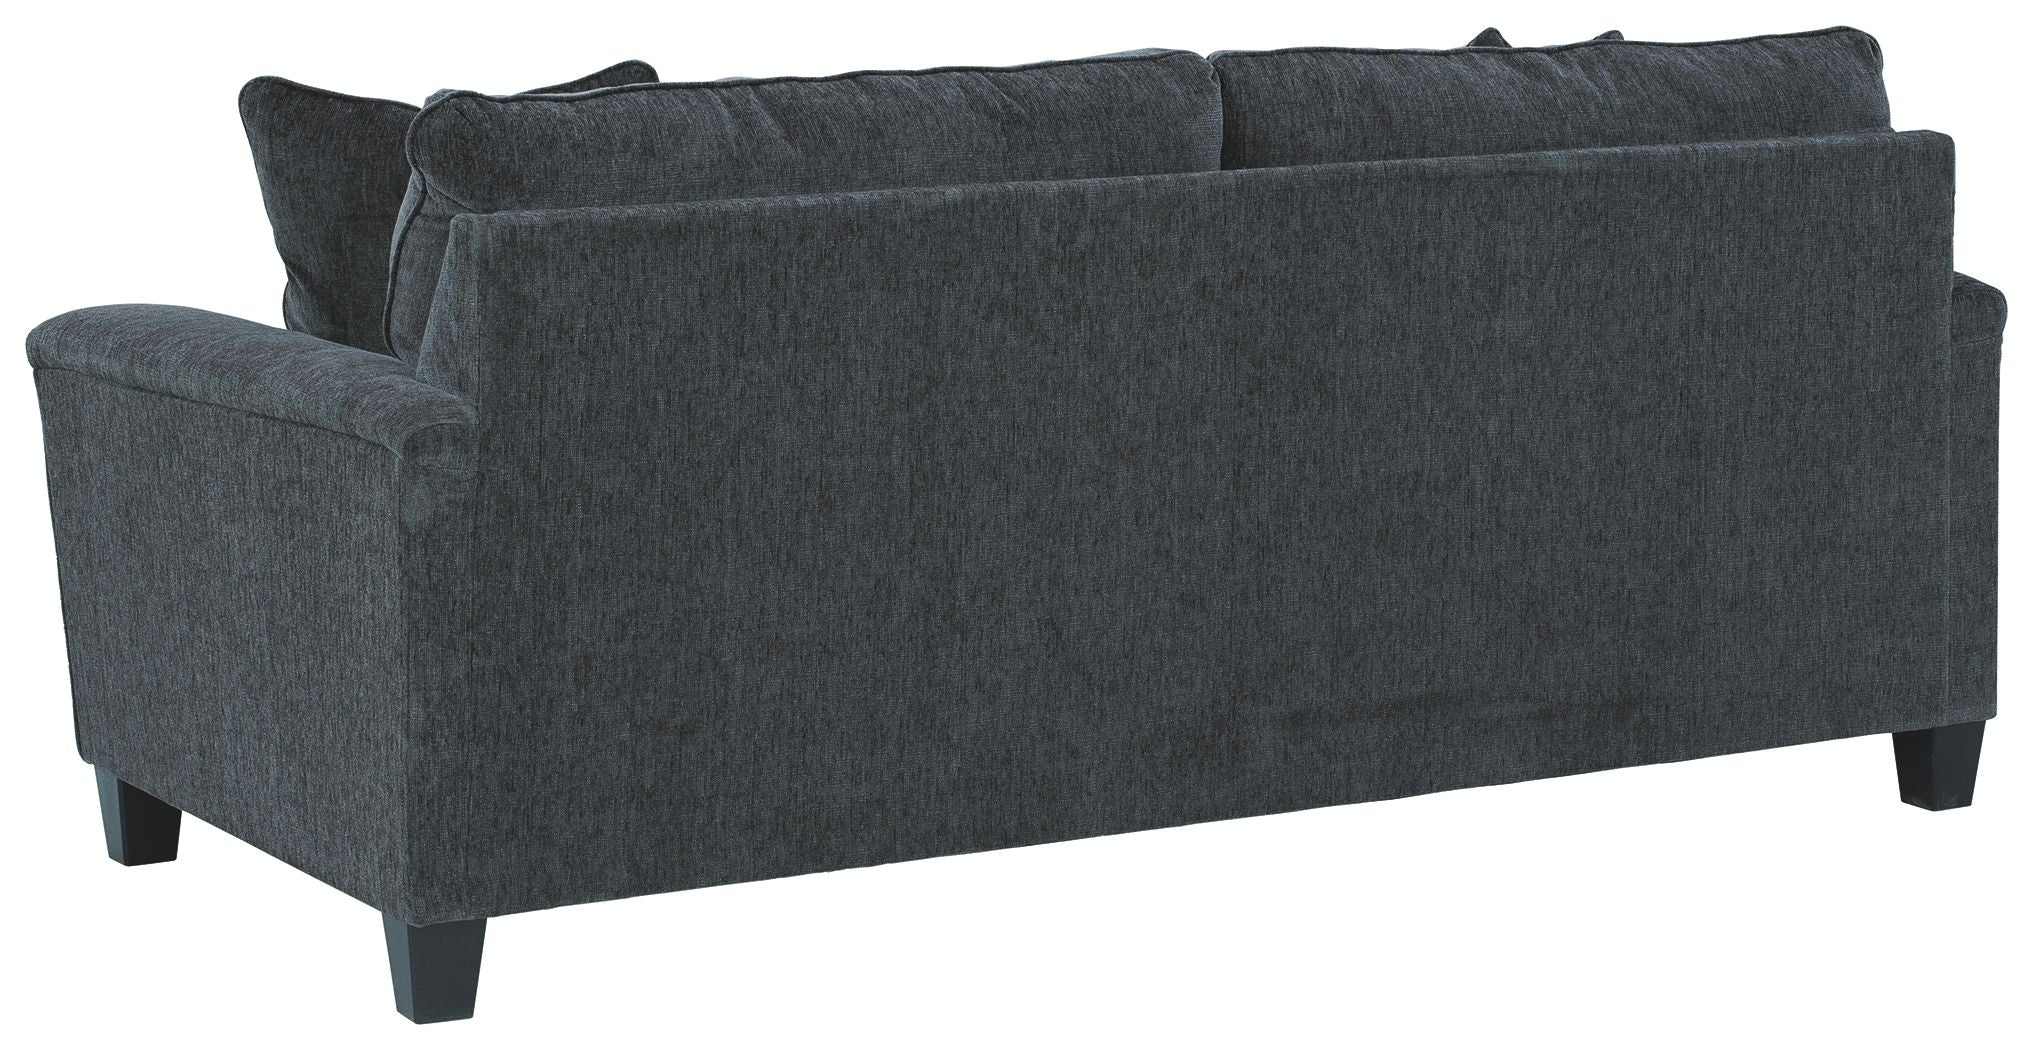 Abinger - Sleeper Sofa